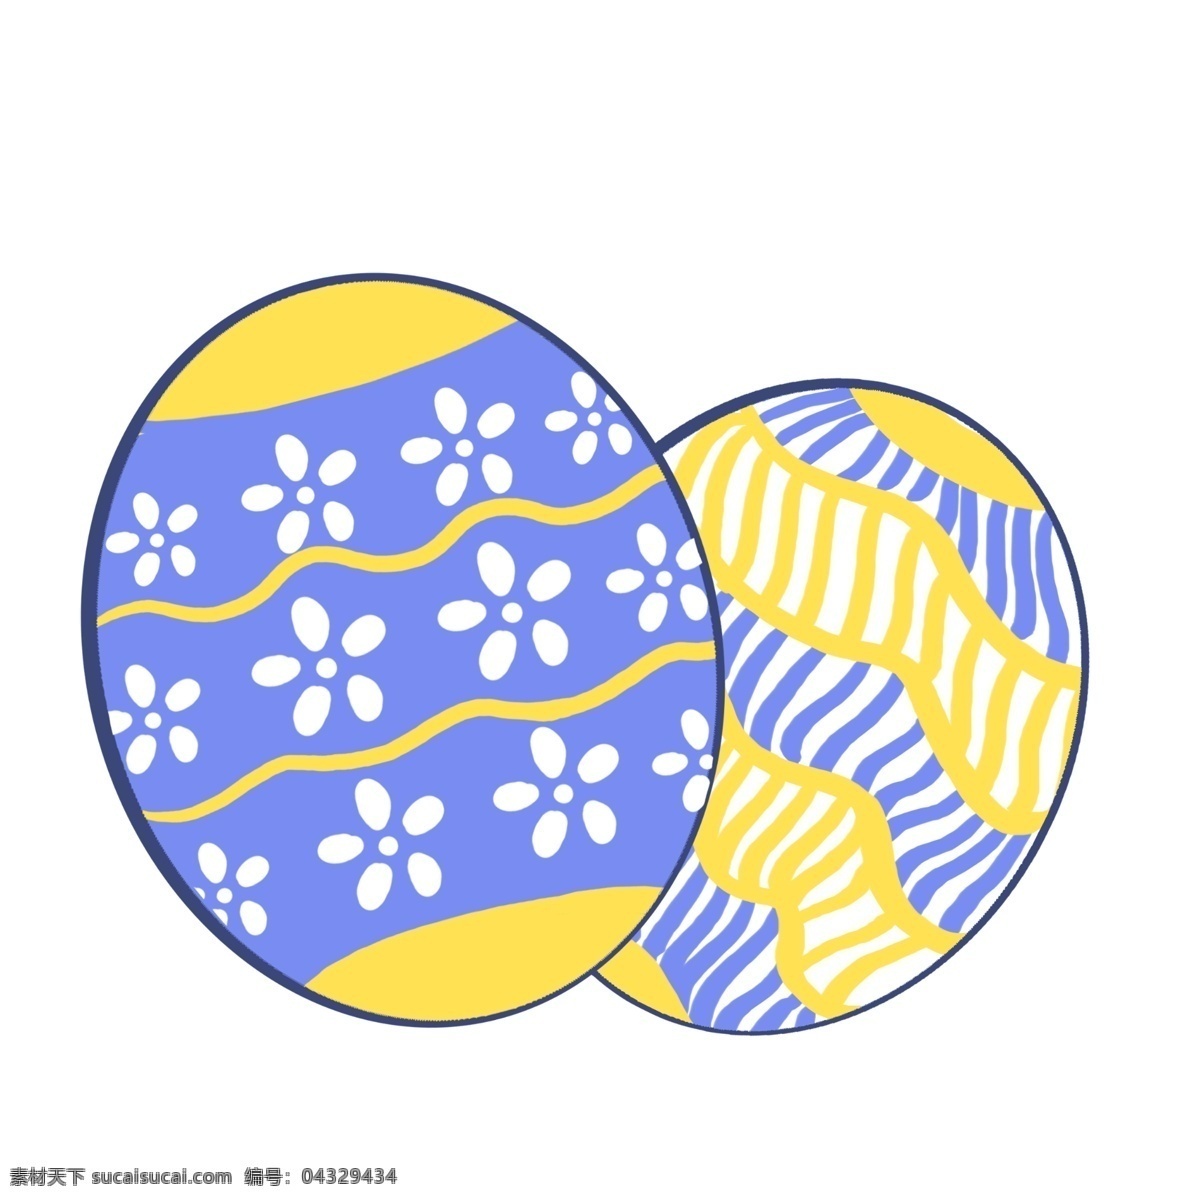 彩色 复活节 彩蛋 插图 蓝色花纹 彩色彩蛋 漂亮的彩蛋 复活节彩蛋 精美的彩蛋 装饰彩蛋 彩蛋插图